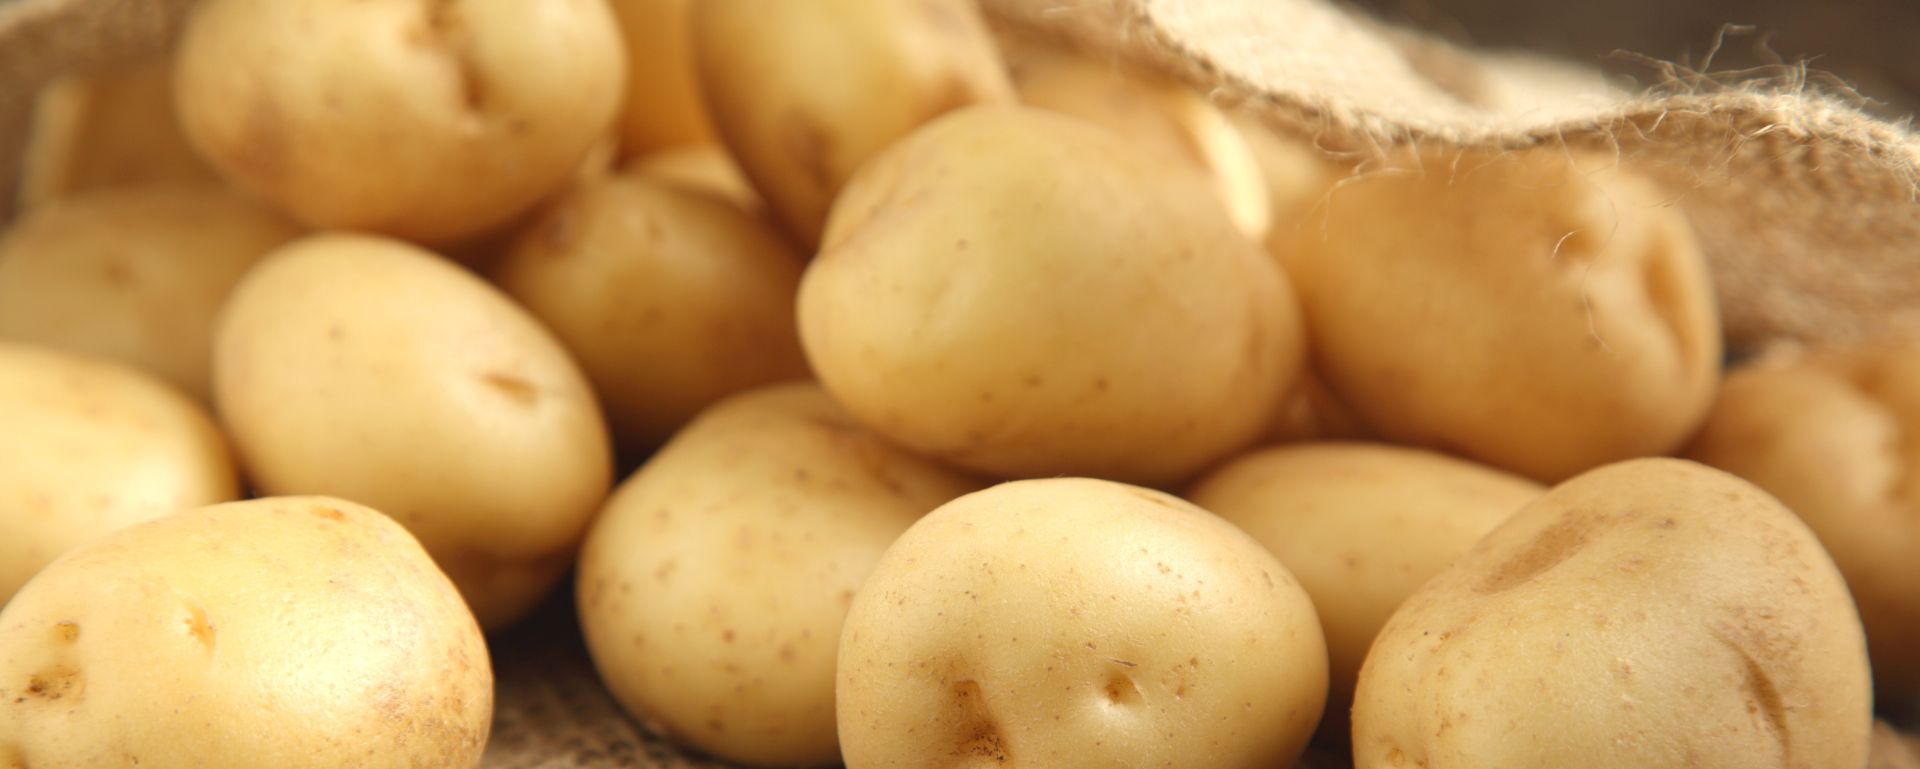 Recherche belegt guten CO2-Fußabdruck für Frischkartoffeln